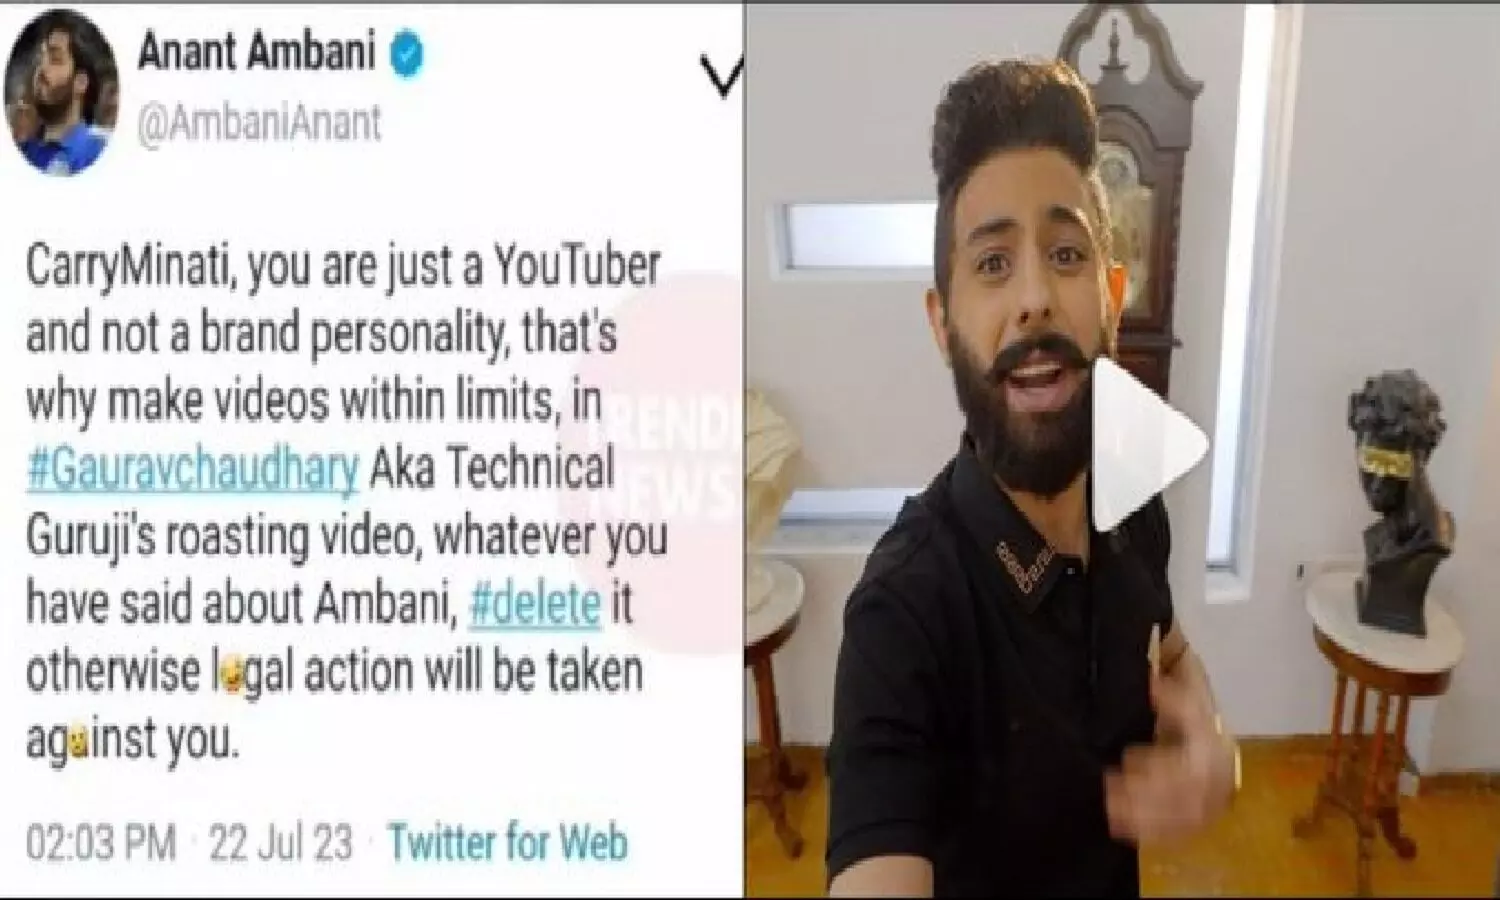 FACT CHECK: Anant Ambani ने CarryMinati को दी धमकी! टेक्निकल गुरूजी को रोस्ट करने के चक्कर में बुरे फंसे अजय नागर